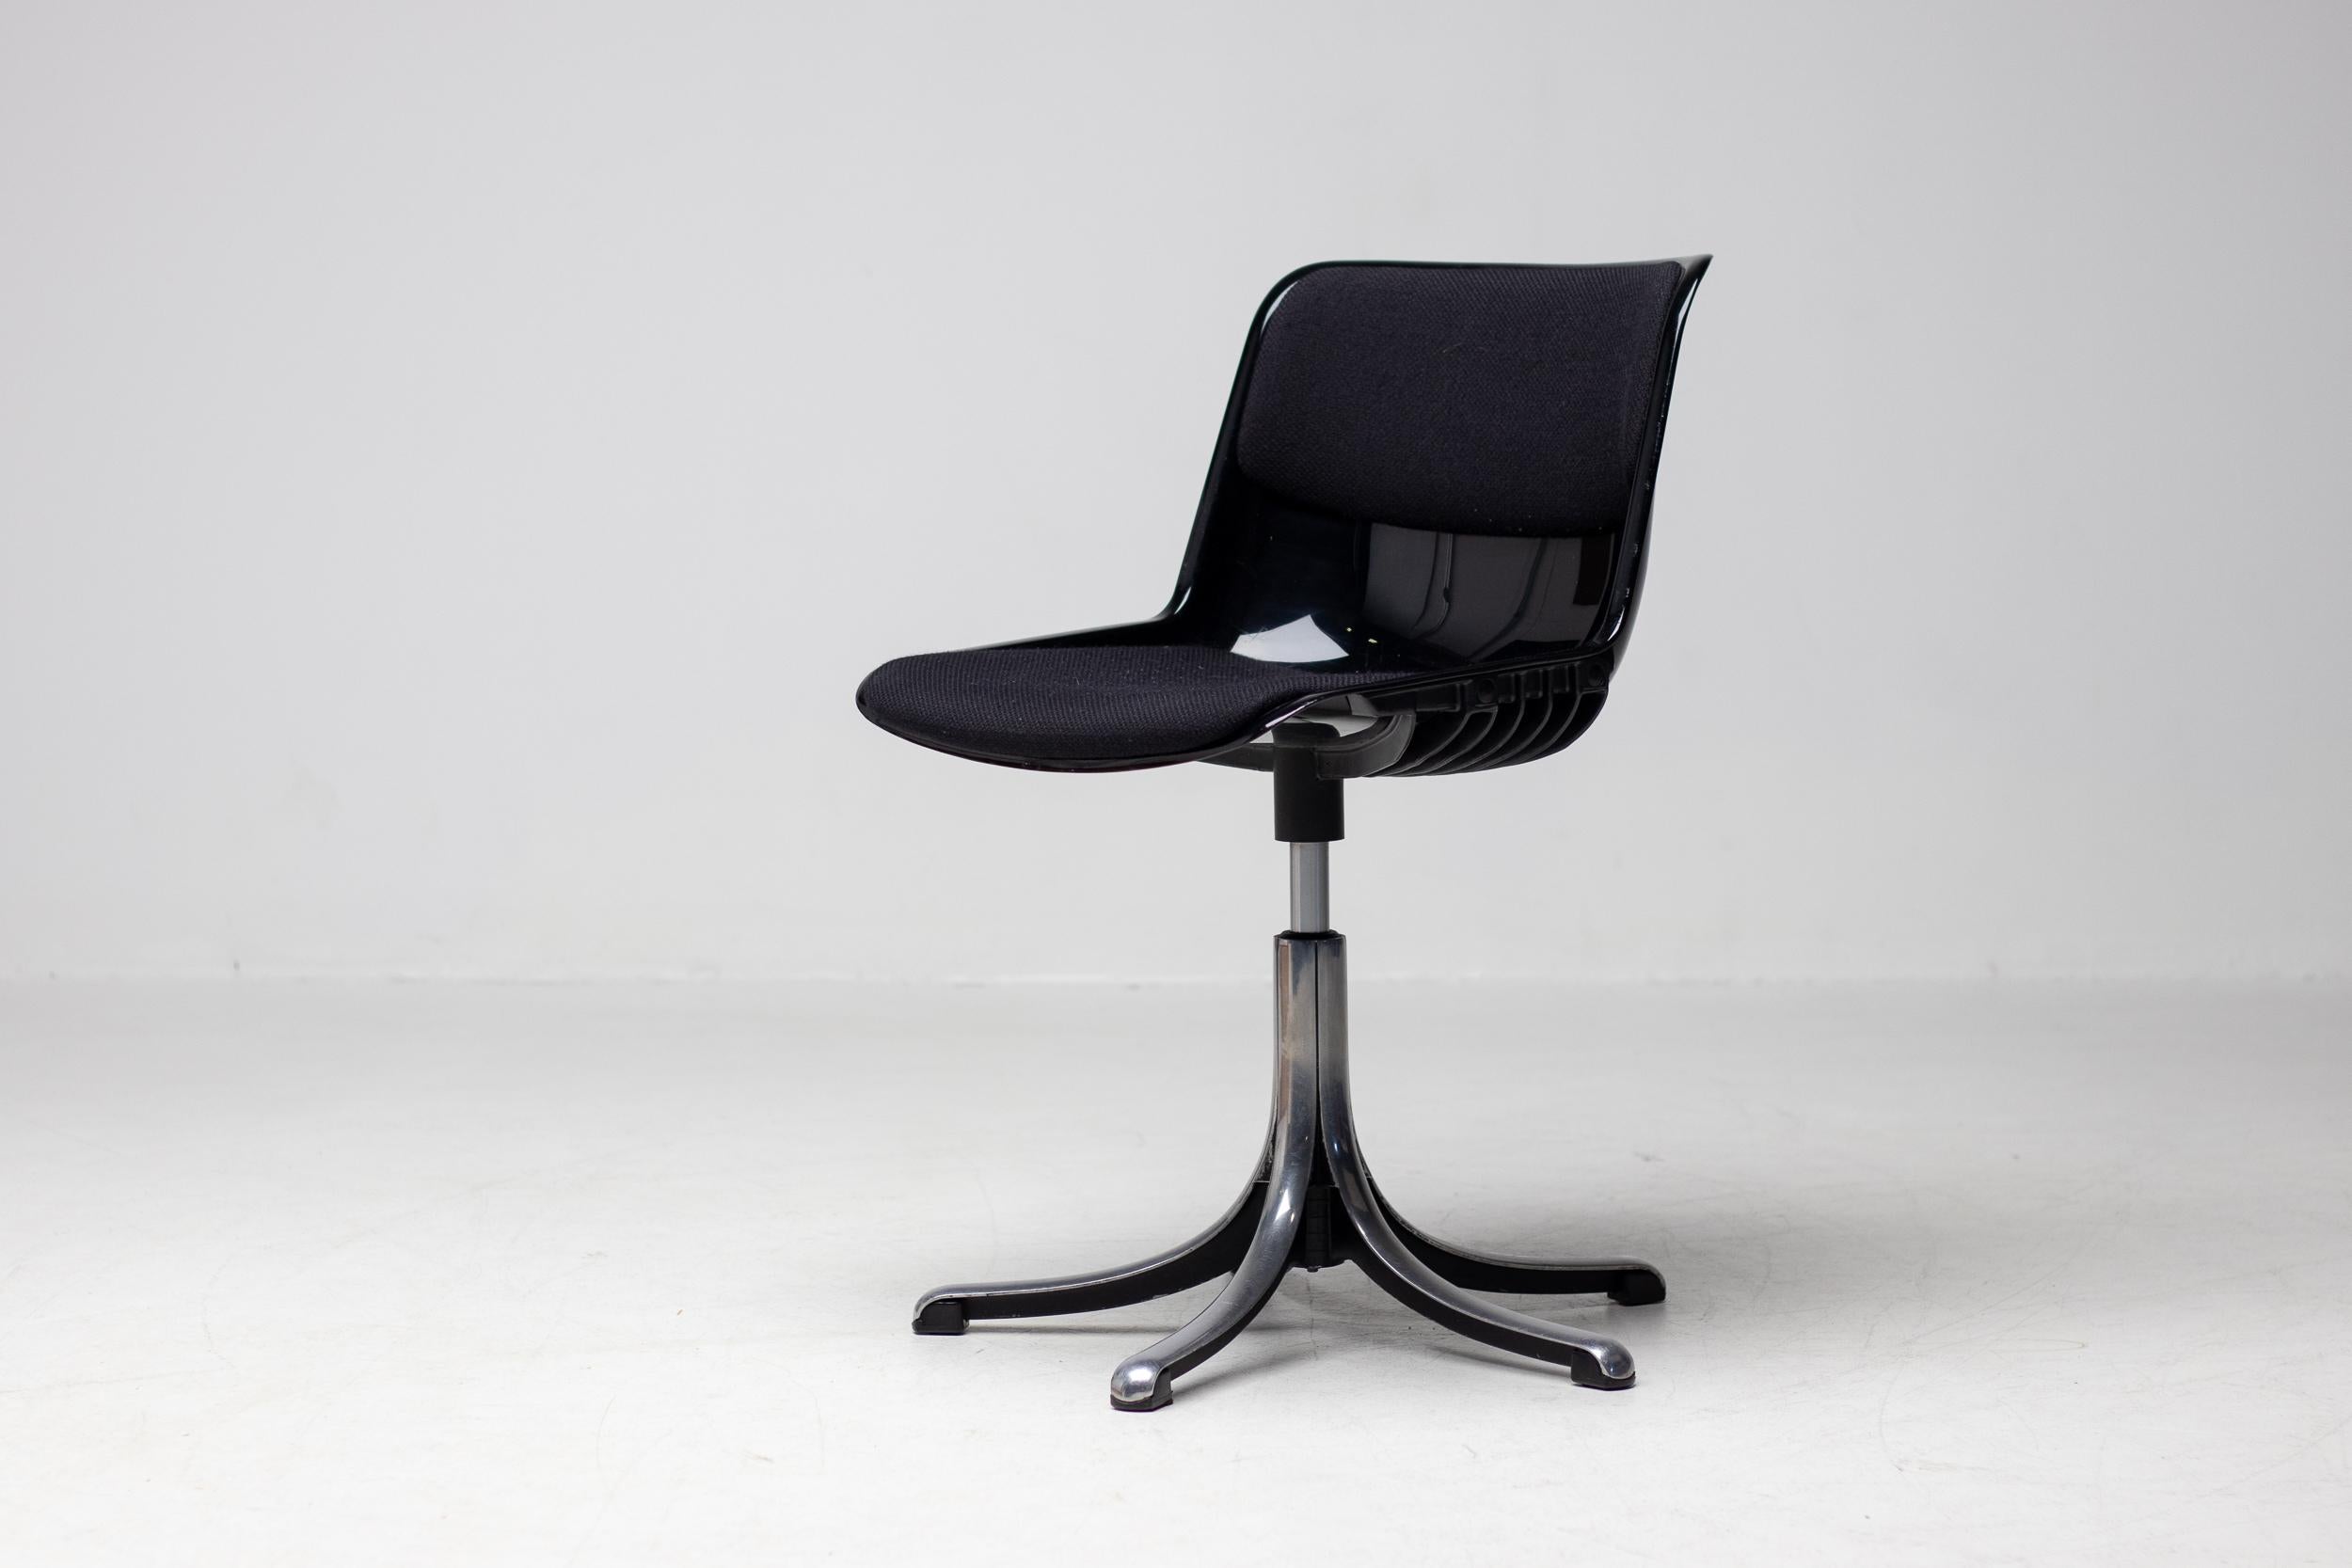 Ensemble de 8 chaises Modus pivotantes et réglables en hauteur, conçues par Osvaldo Borsani pour Tecno, Milan.
Ces chaises ont été utilisées pendant de nombreuses années dans la salle de conférence du siège de Chanel à Amsterdam.
L'équivalent de la